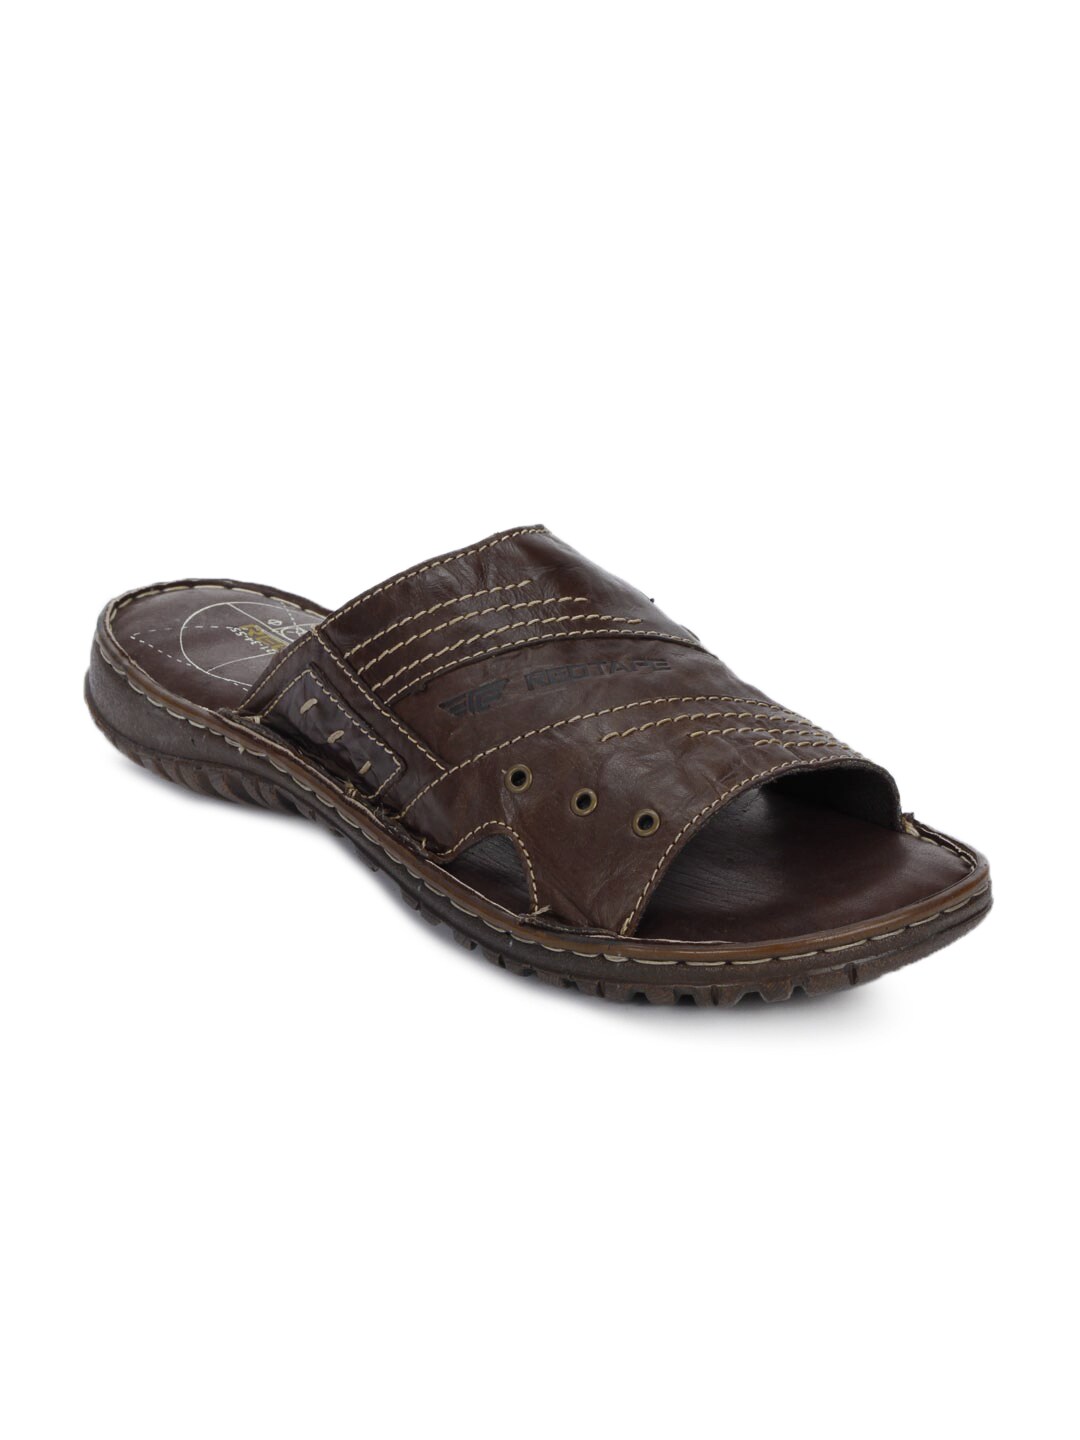 Redtape Men Casual Brown Sandals